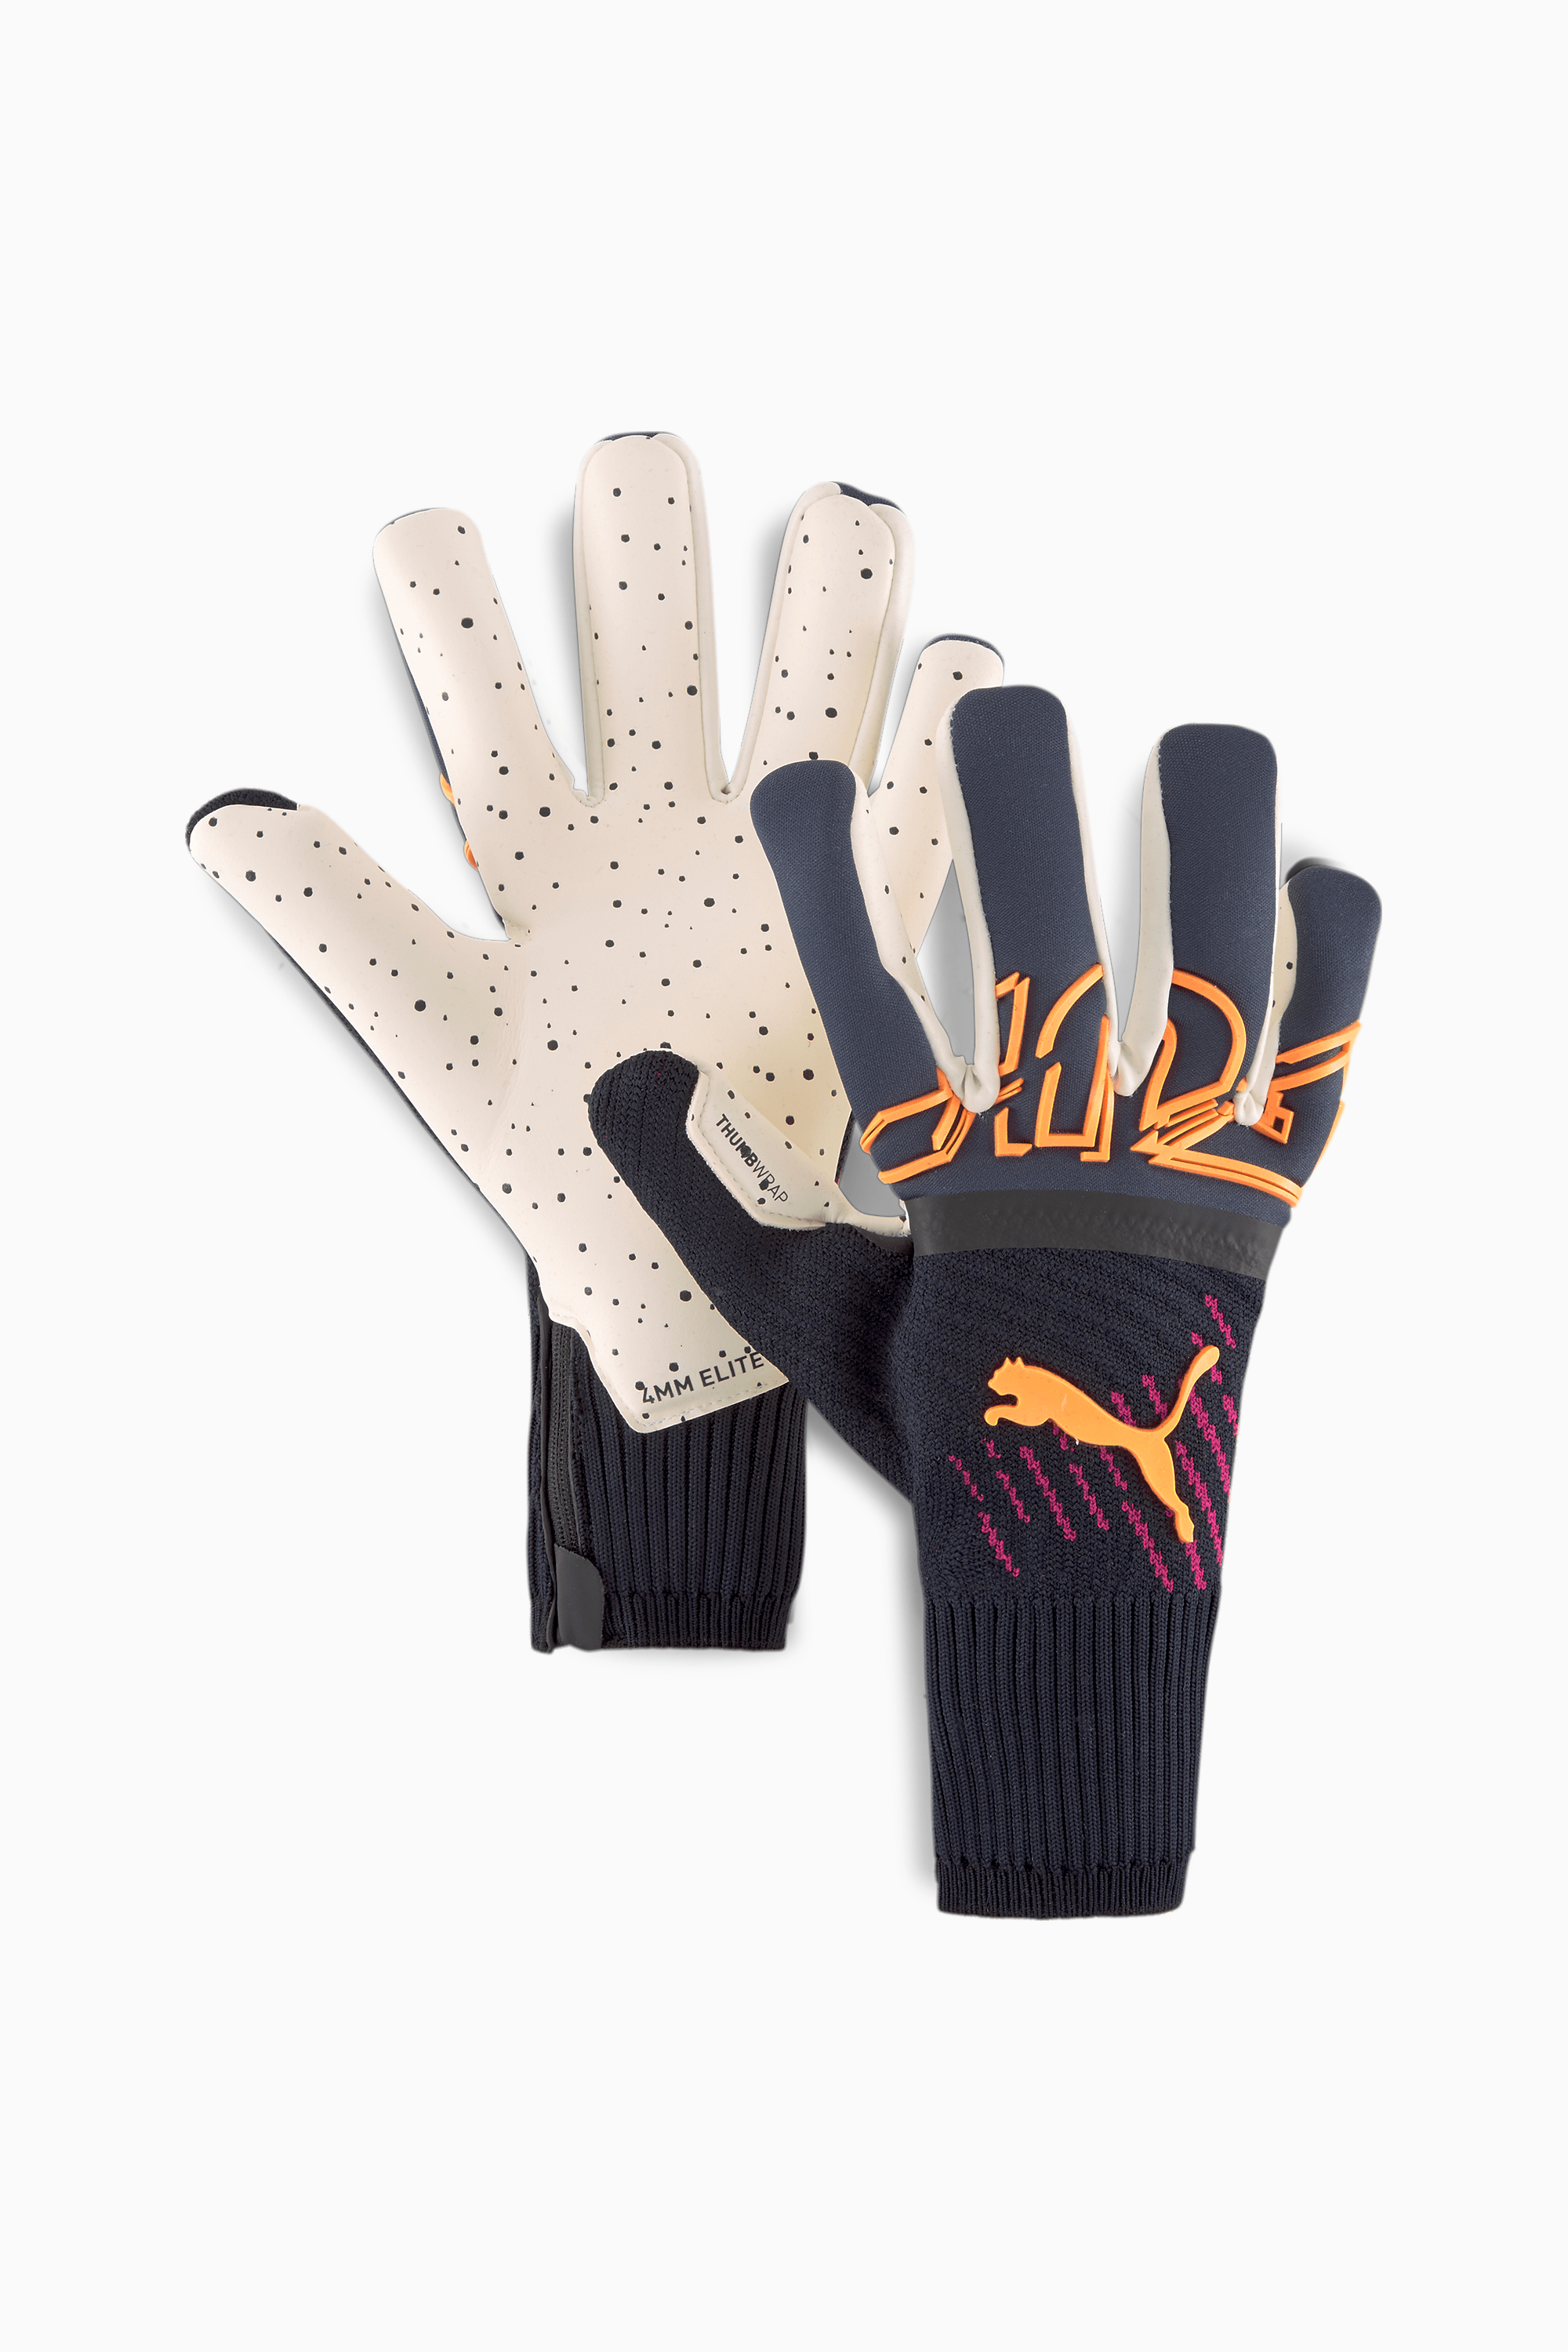 https://images.puma.com/image/upload/t_vertical_product/global/041752/07/fnd/PNA/fmt/png/FUTURE-Z-Grip-1-Hybrid-Goalkeeper-Gloves